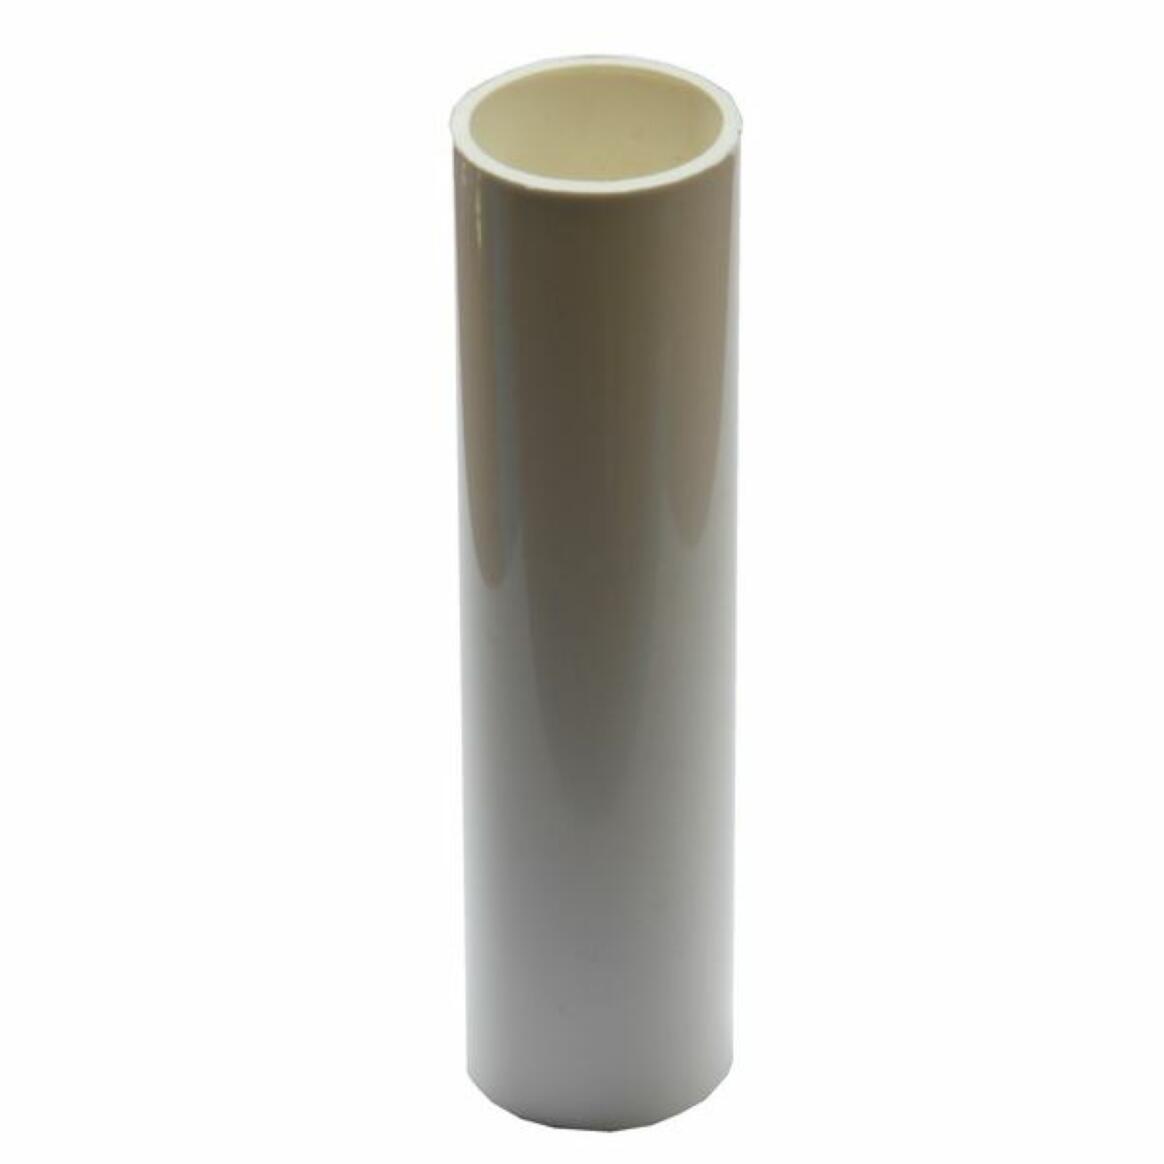 Tube de bougie en plastique blanc pour luminaire main product image